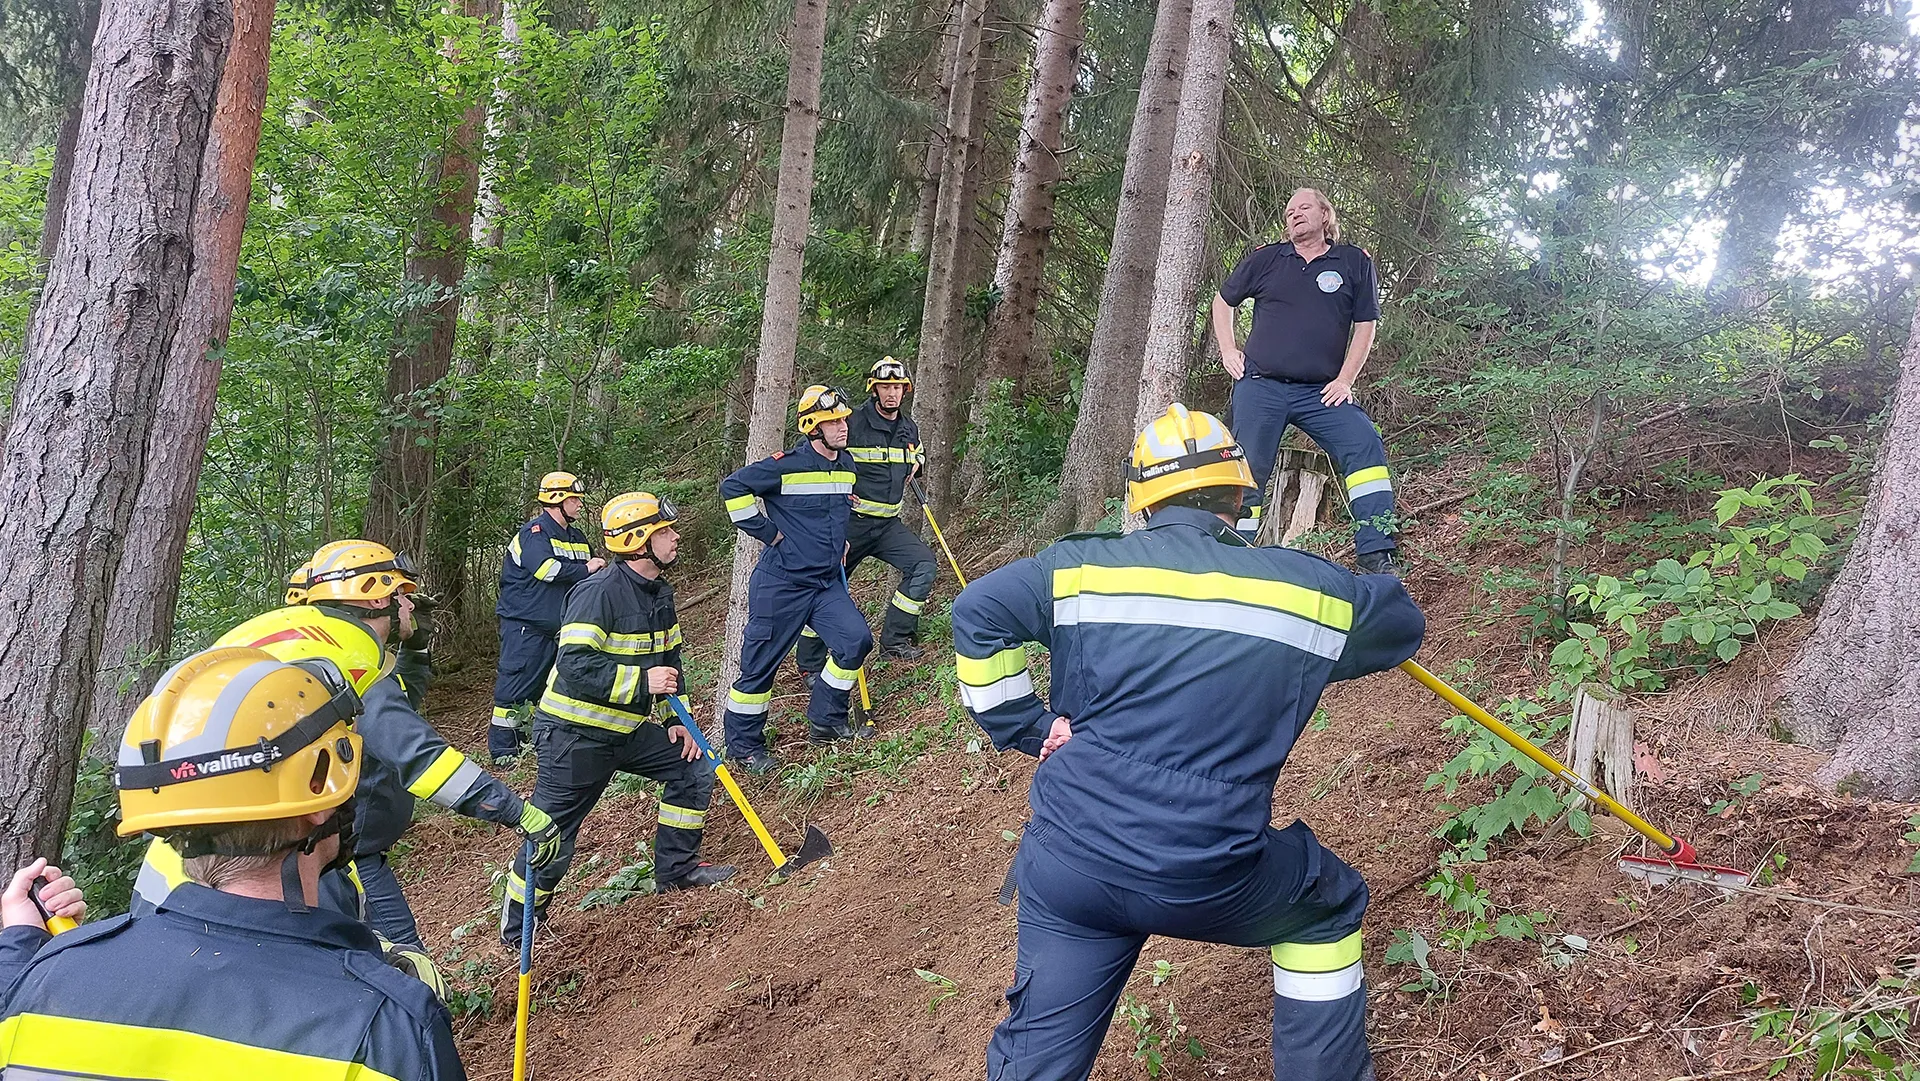 Feuerwehrmänner mit gelben Helmen hören einem Vortrag im Wald zu